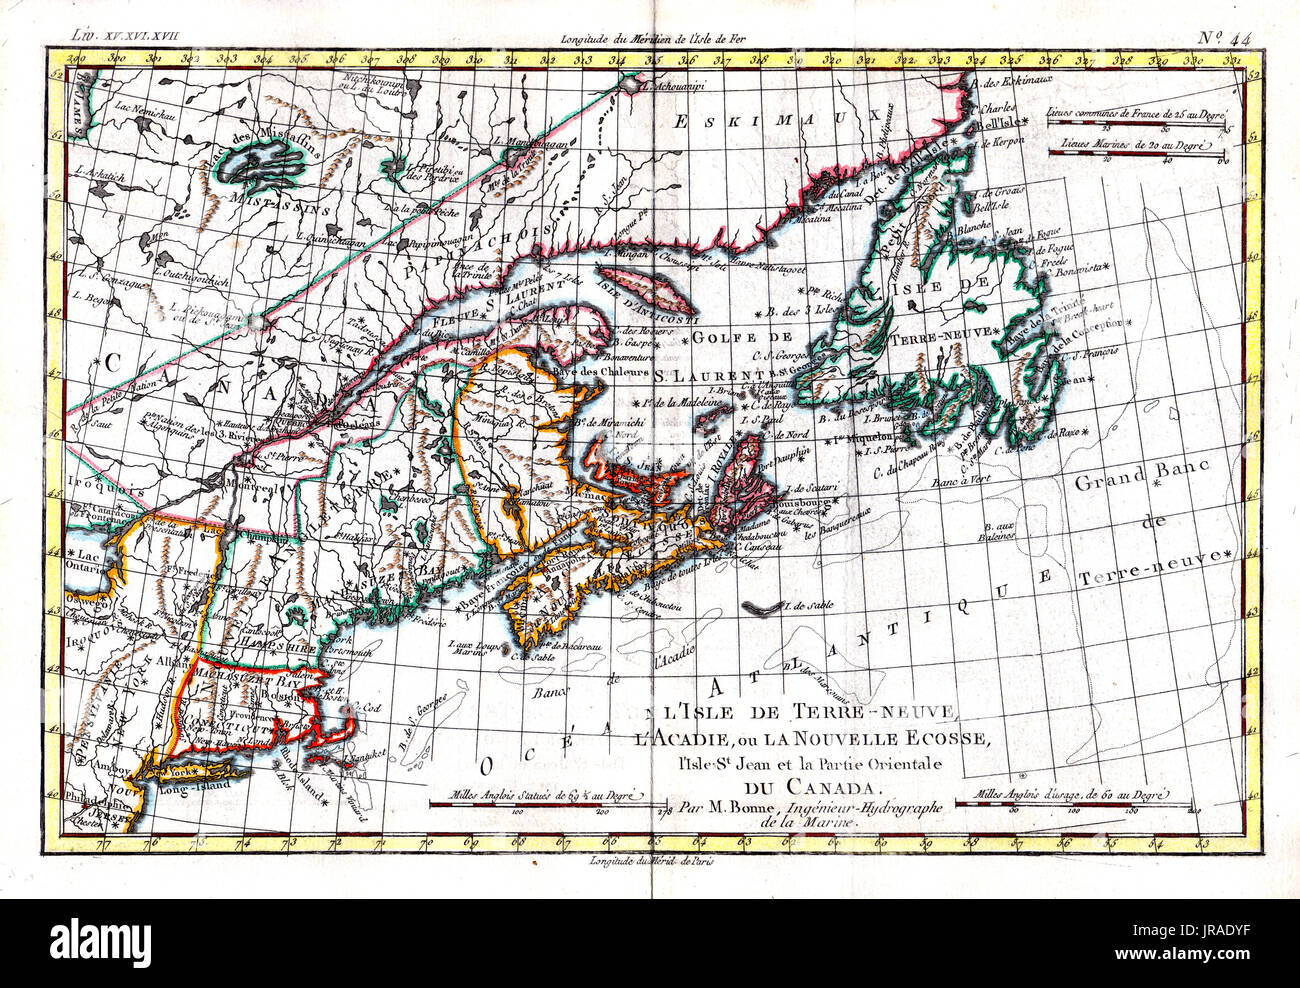 1780 bonne antike Karte der USA Nordosten und Nova Scotia Kanada, einschließlich Neufundland, New England, Maine, Massachusetts und anderen Staaten Stockfoto